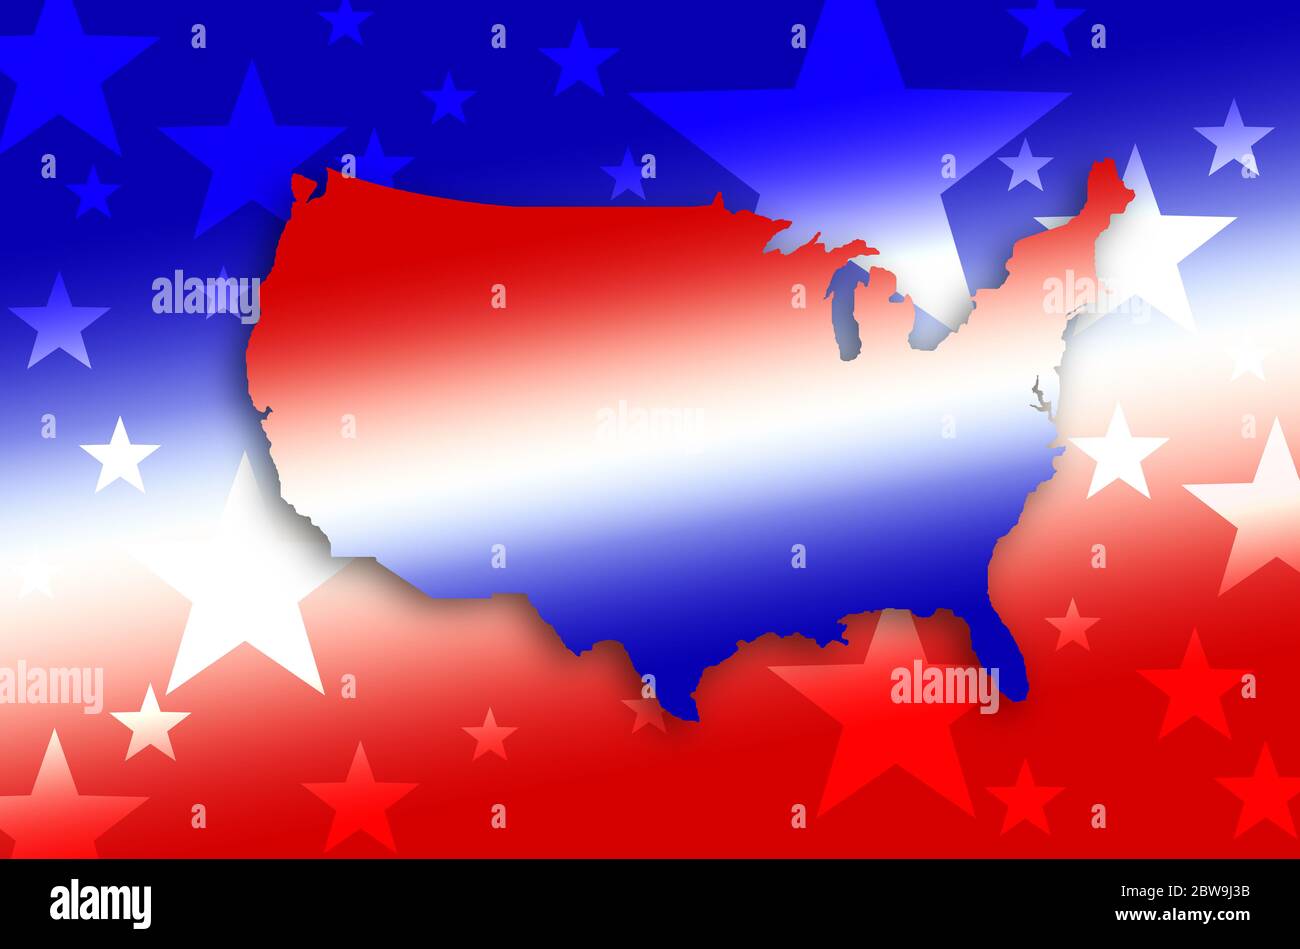 Immagine generata digitalmente della forma della mappa e delle stelle USA Foto Stock